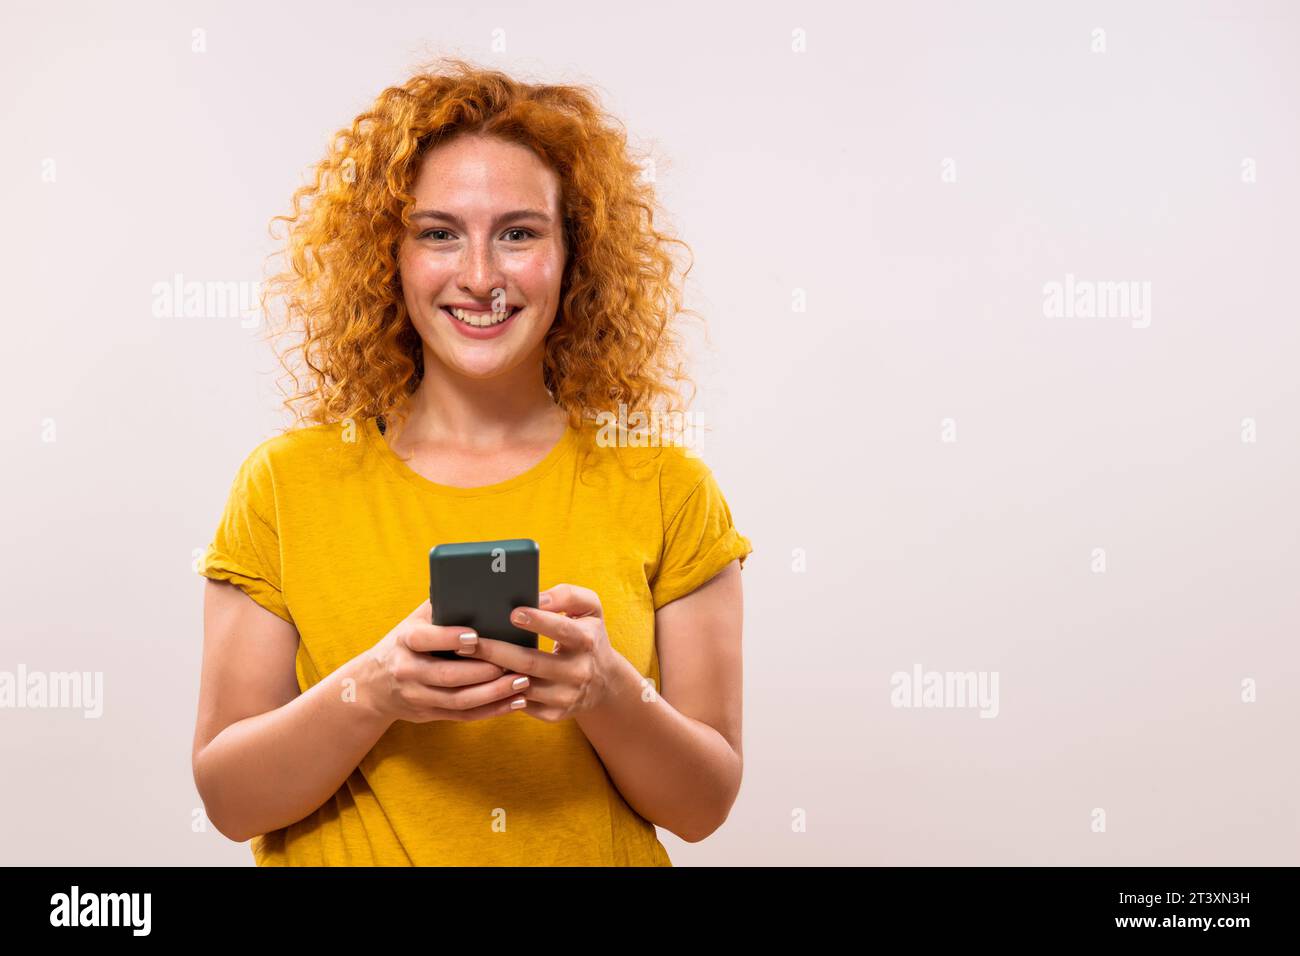 Image de femme heureuse de gingembre utilisant le téléphone Banque D'Images